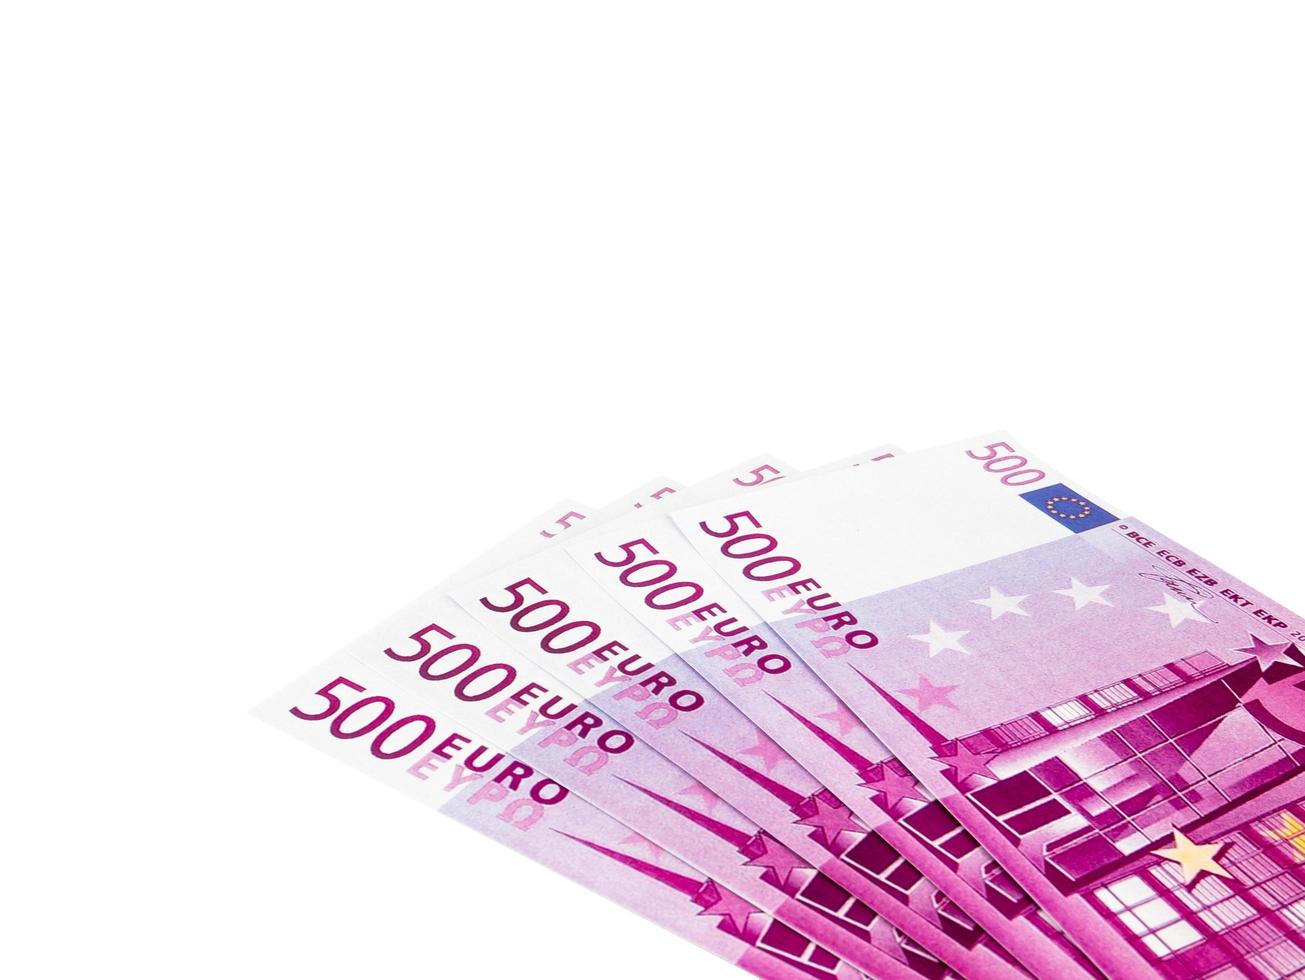 cinquecento 500 banconote in euro banconote, denaro in valuta europea isolato su sfondo bianco, percorso di ritaglio foto